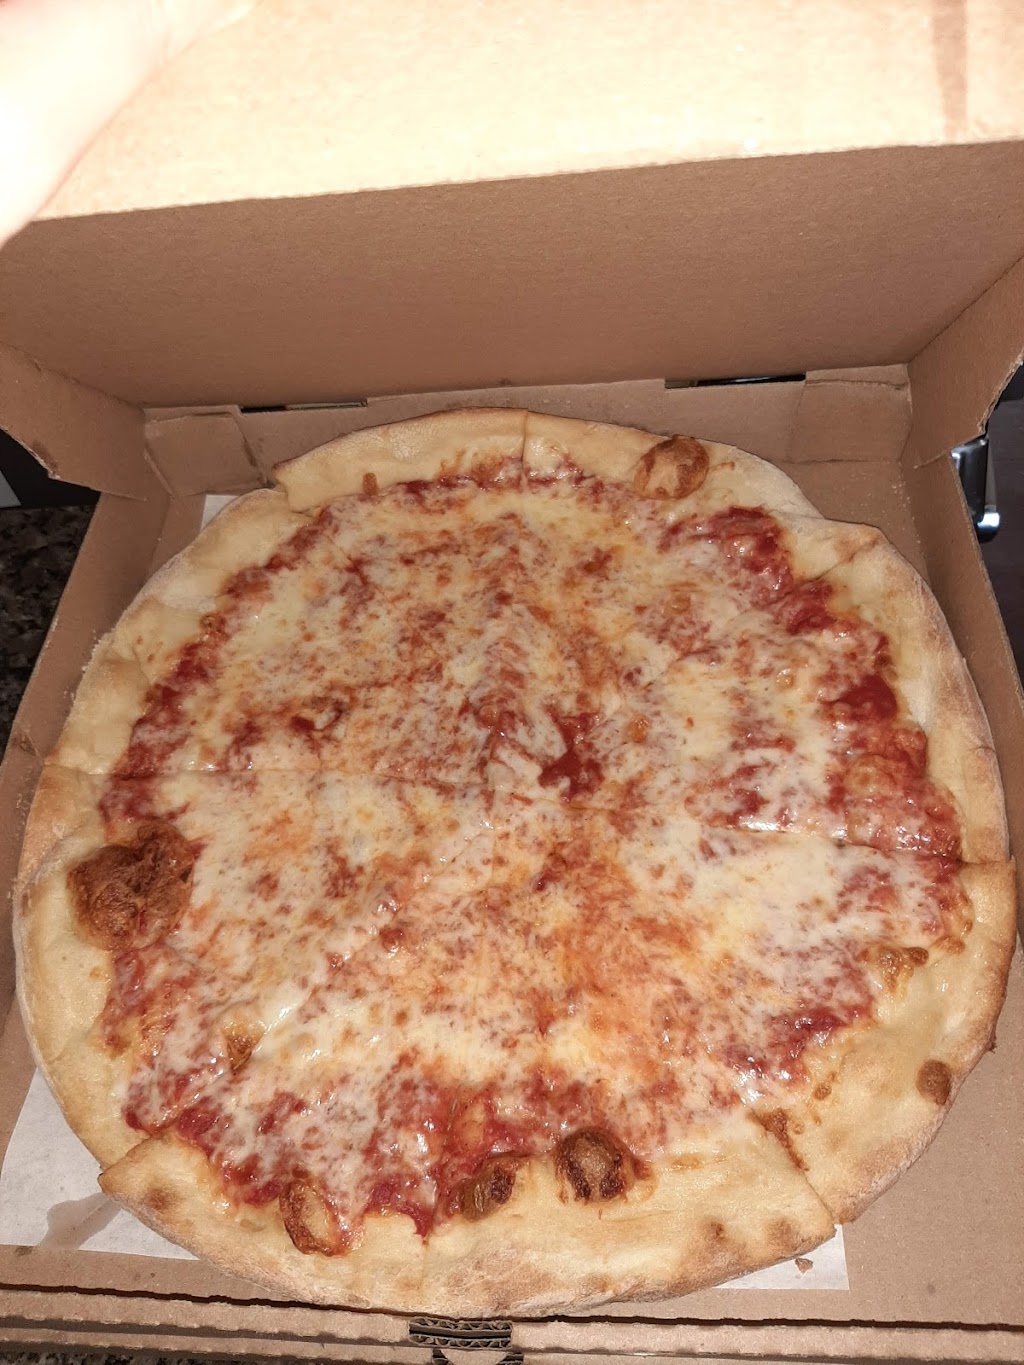 Rosarios Pizza | 318 Pennsylvania Ave, Oreland, PA 19075, USA | Phone: (215) 572-8127